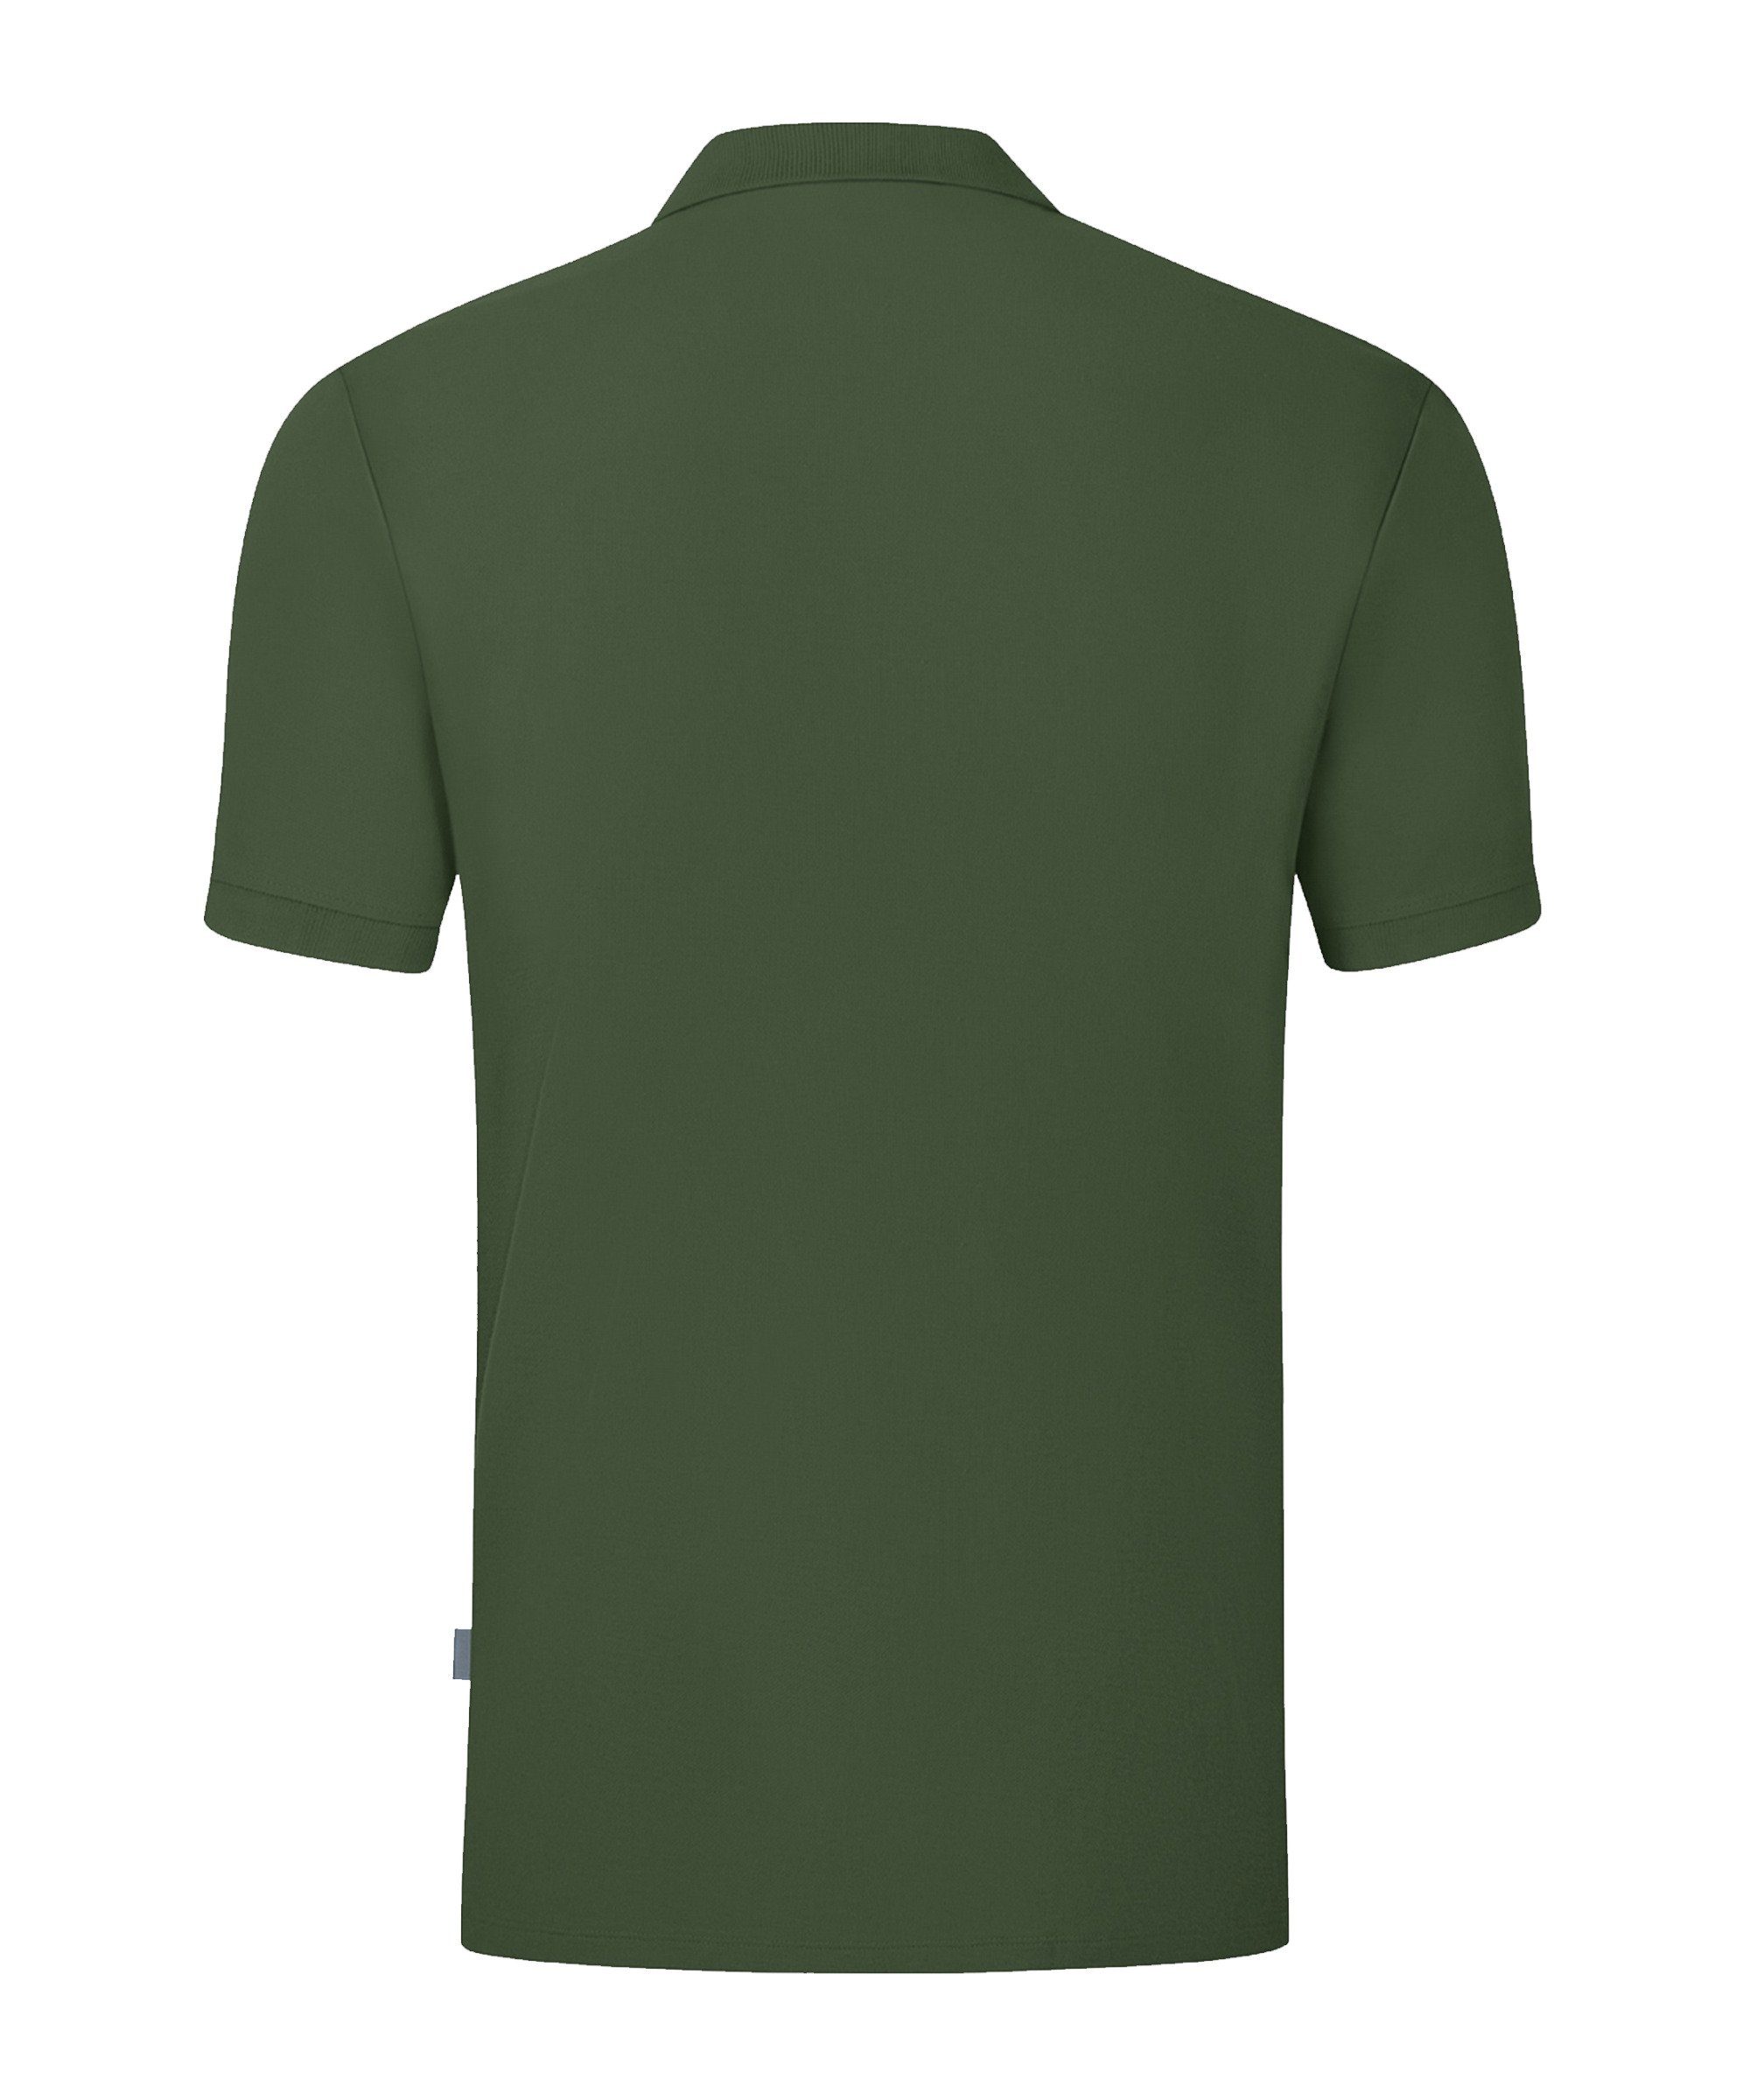 Nachhaltiges T-Shirt Jako Produkt gruen Organic Polo Shirt